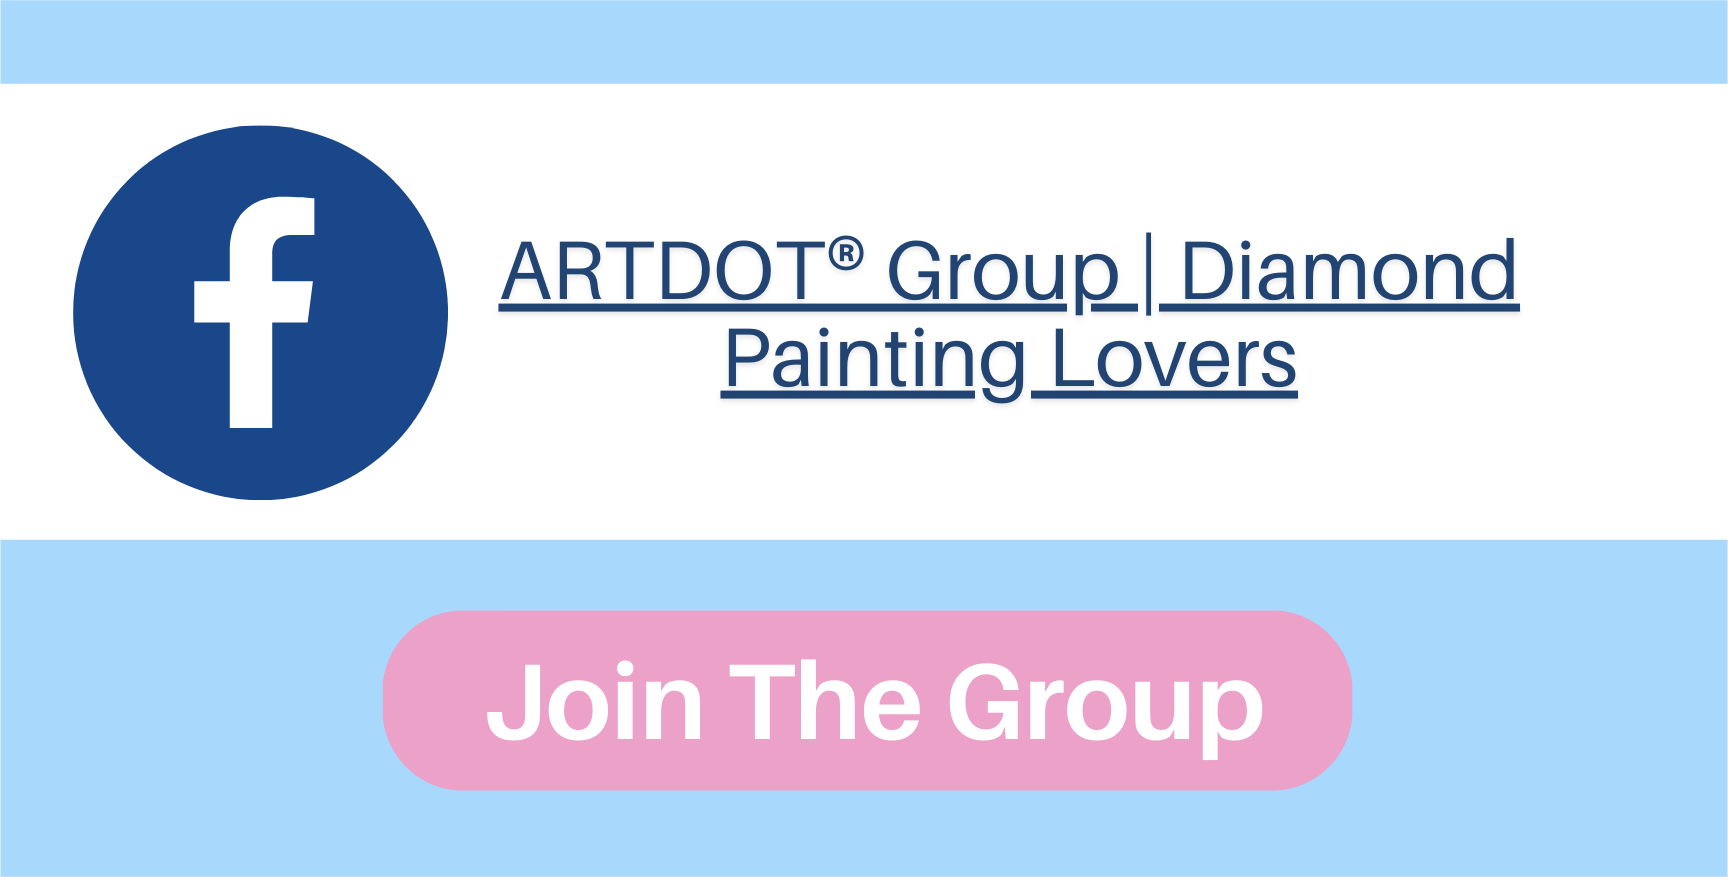 ARTDOT-Diamond painting-winter sale